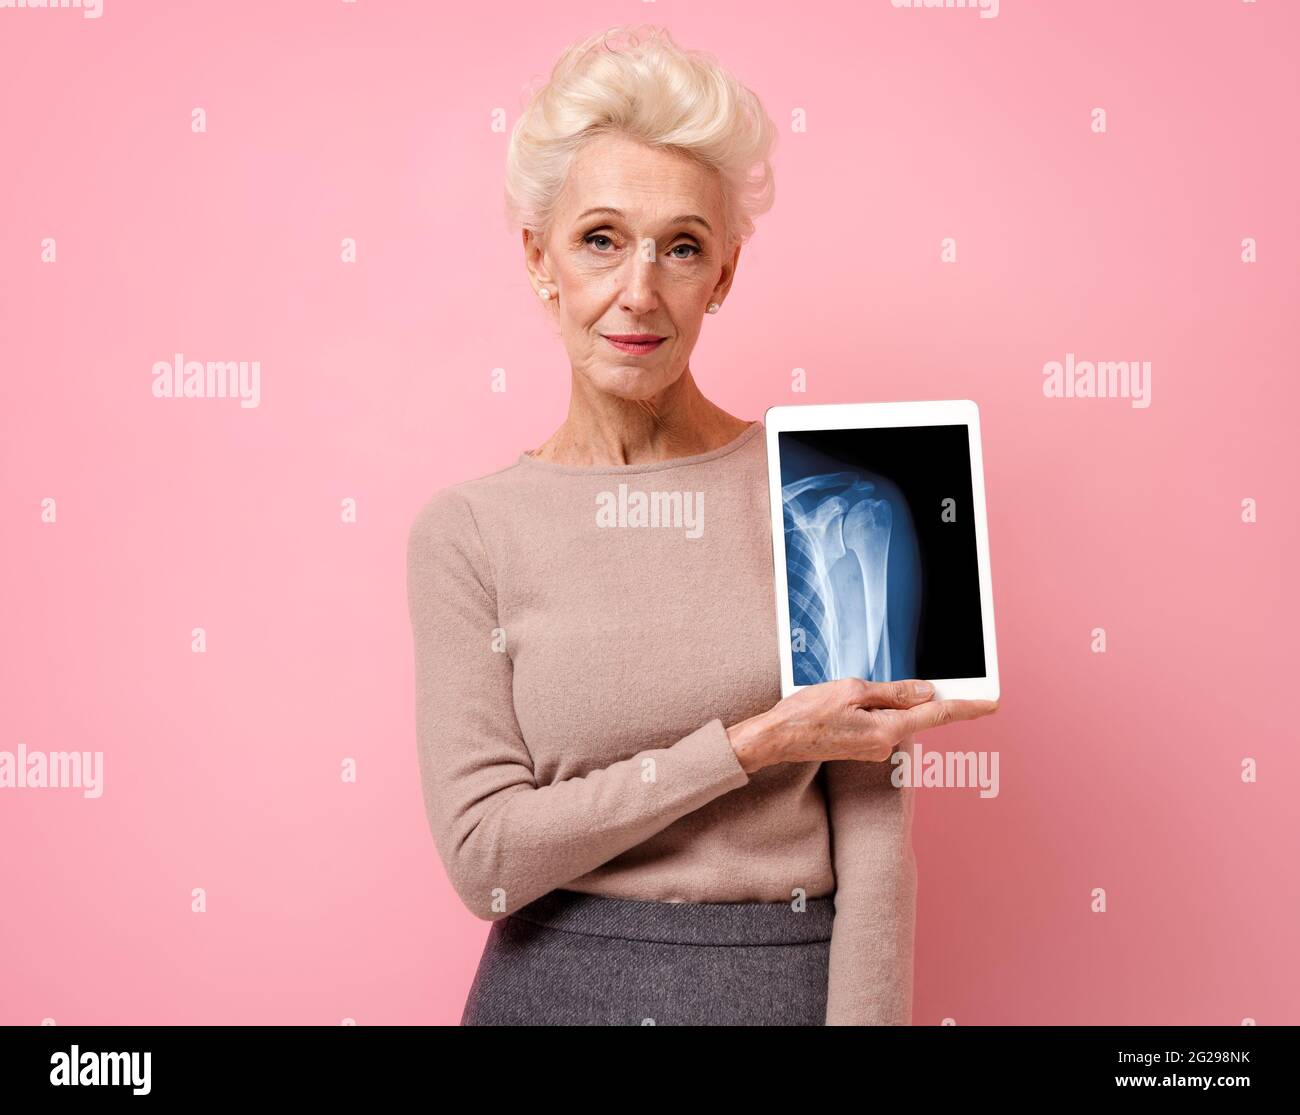 Une femme attirante présente une radiographie de l'articulation de l'épaule. Photo d'une femme âgée souriante avec une tablette dans les mains sur fond rose. Concept médical Banque D'Images